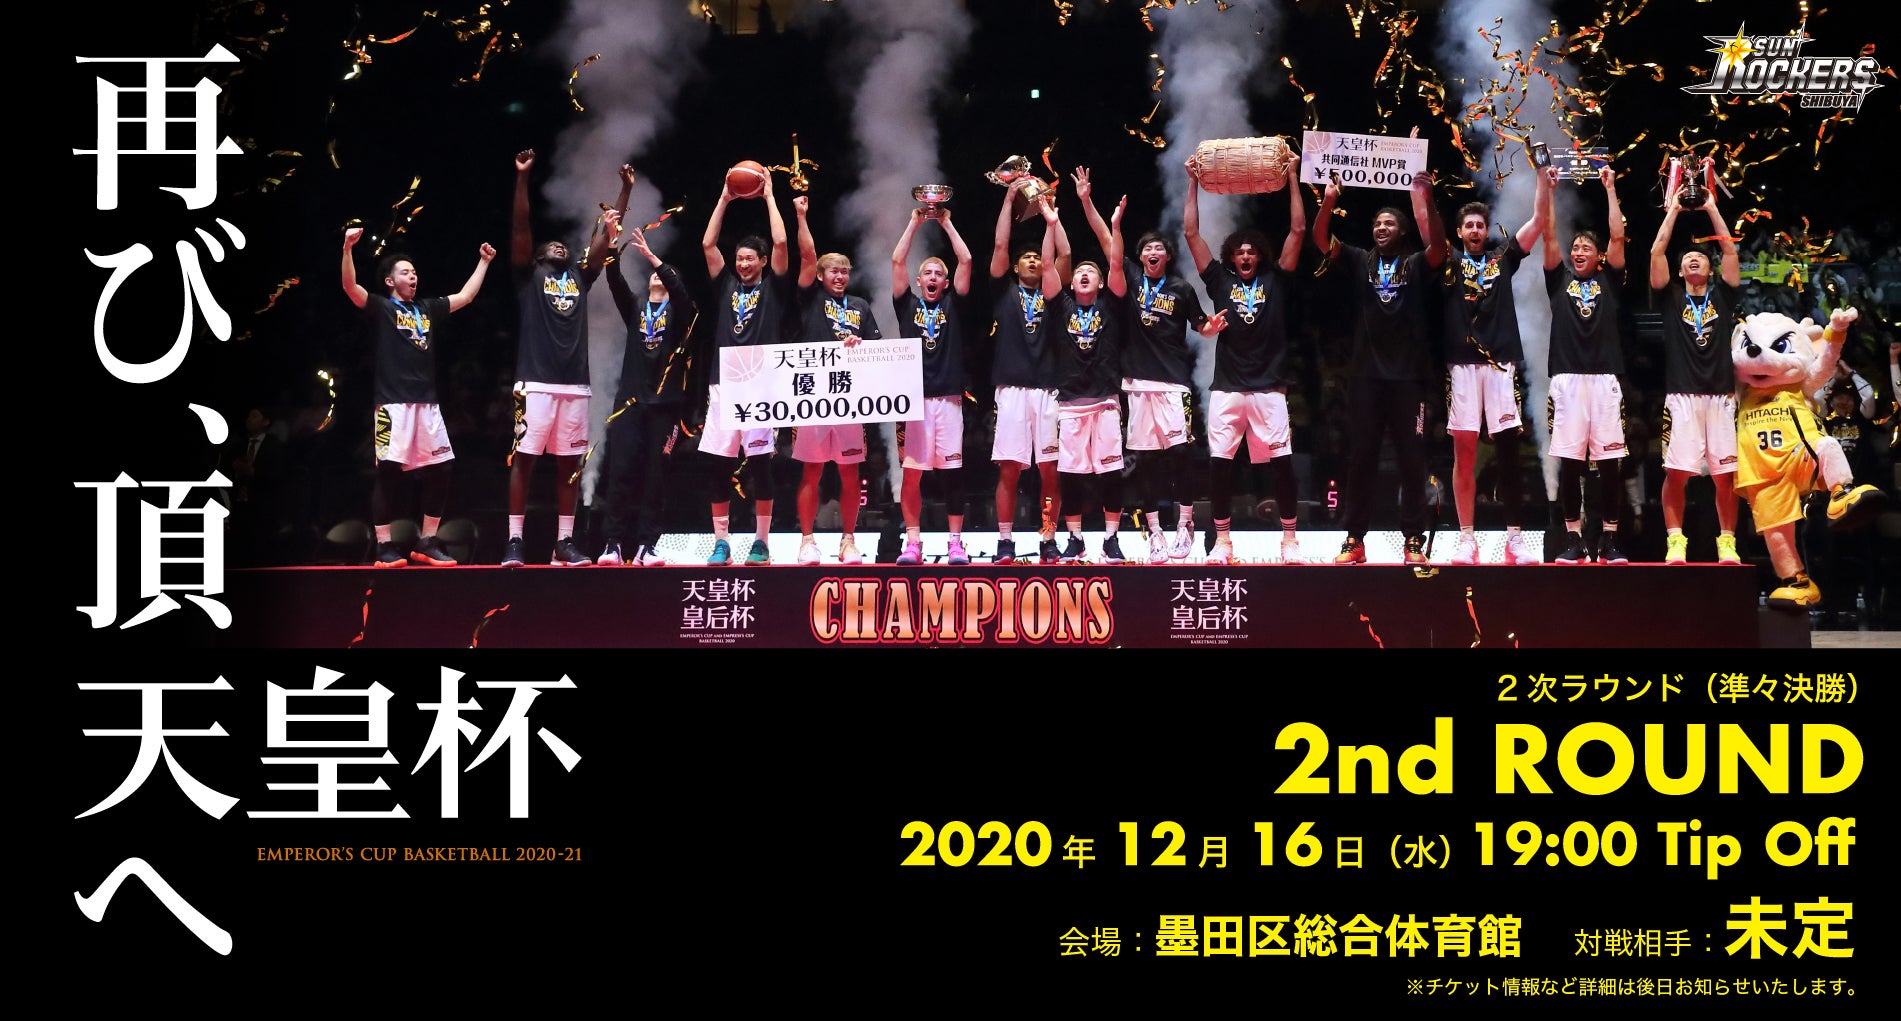 第96回天皇杯 第87回皇后杯 全日本バスケットボール選手権大会 第2次ラウンド開催日時決定のお知らせ サンロッカーズ渋谷